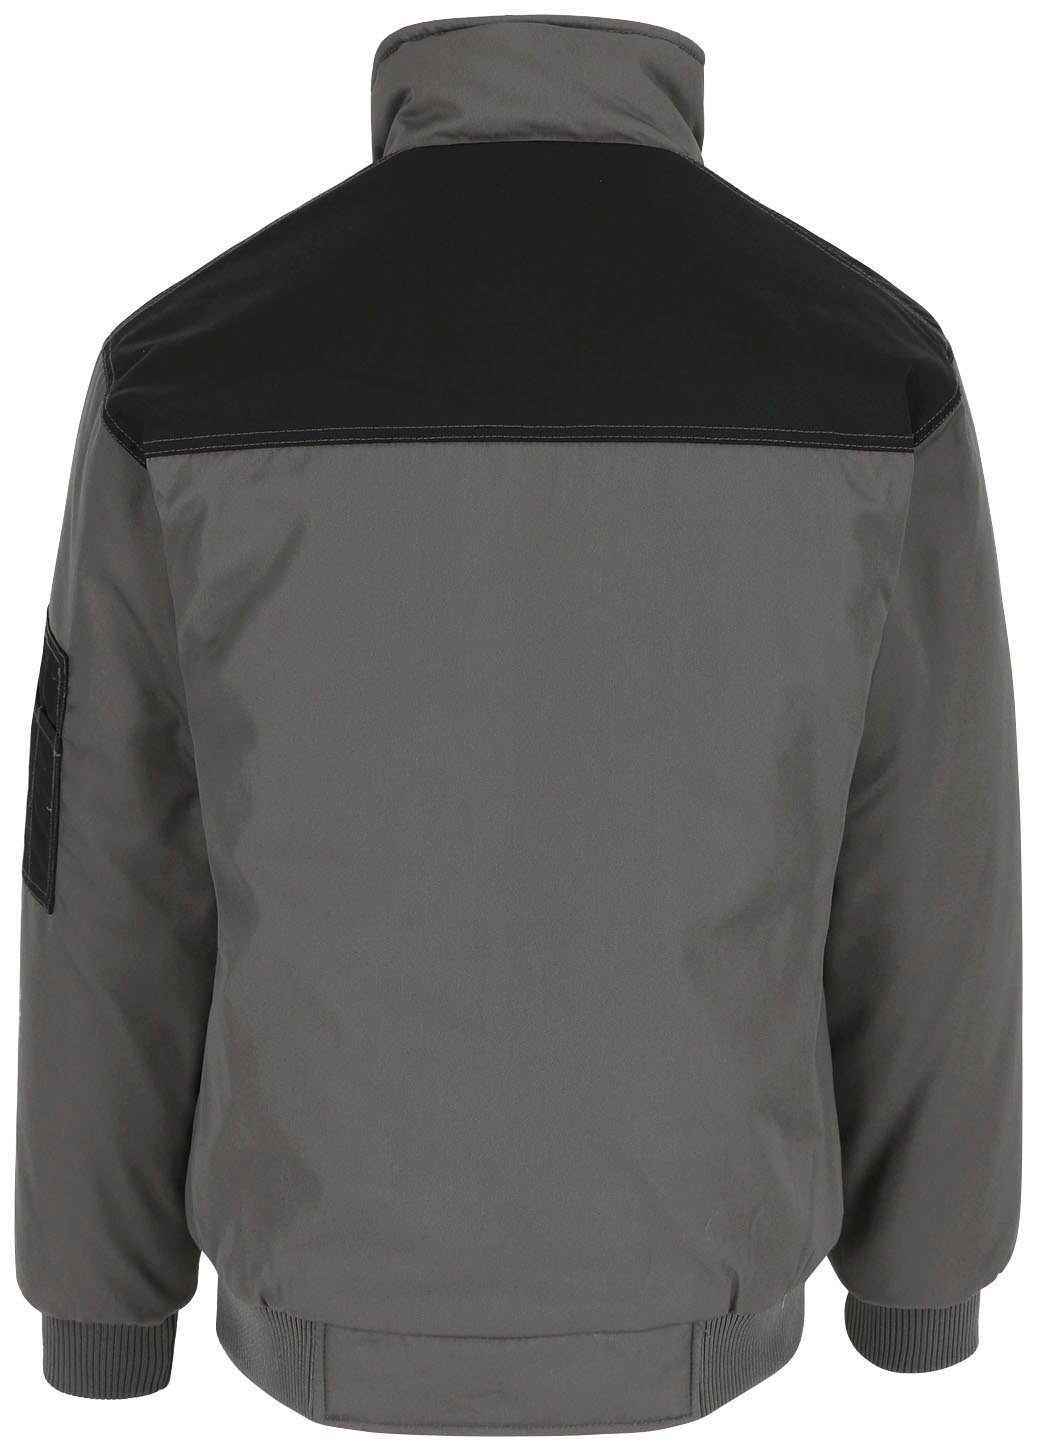 Wasserabweisend Farben grau Taschen, viele viele Herock Jacke Typhon Arbeitsjacke Fleece-Kragen, robust, mit